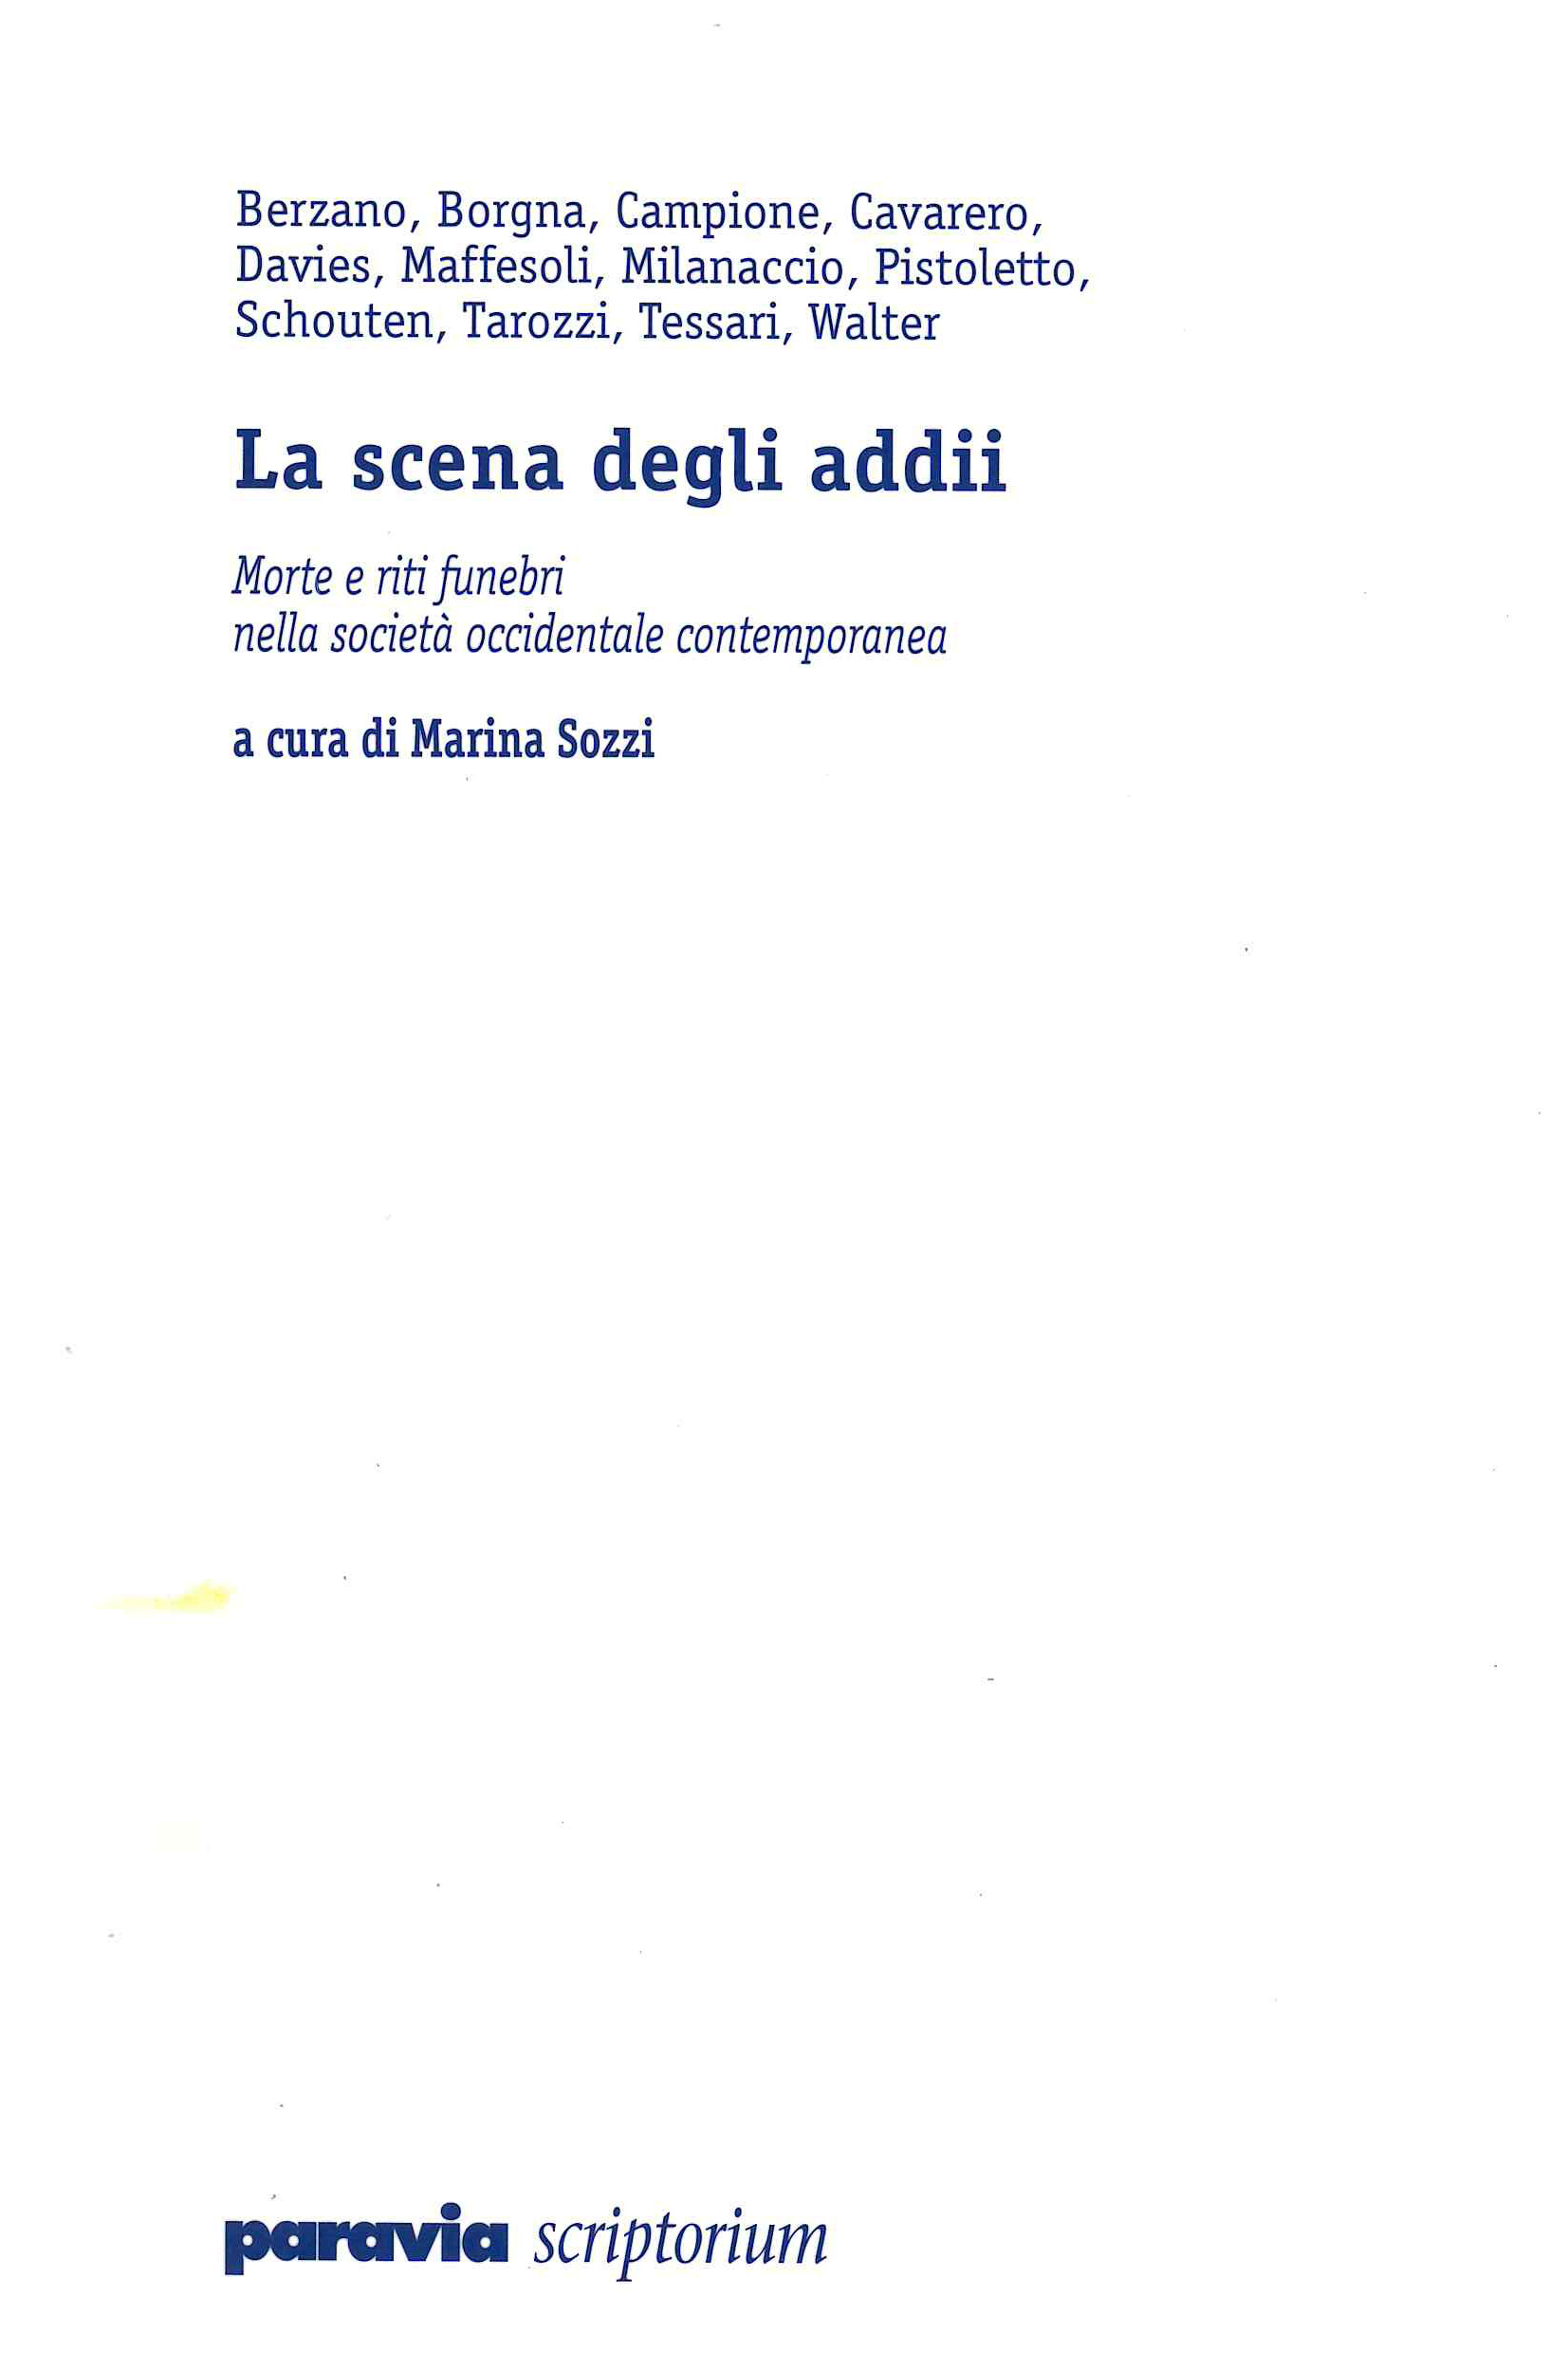 Sozzi M. (2001). La scena degli addii. Morte e riti nella società occidentale contemporanea. Paravia Sriptorium